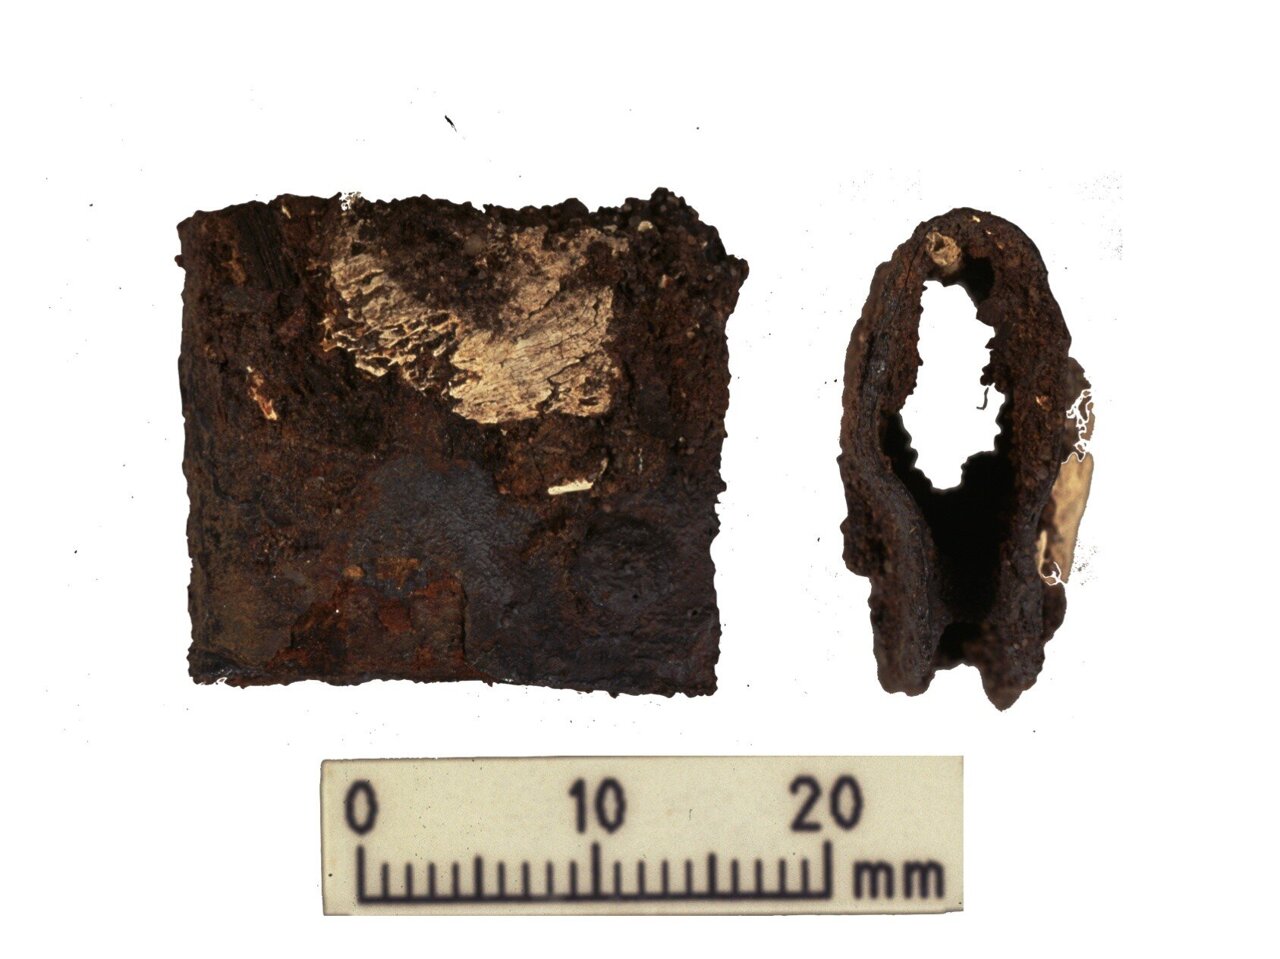 Kapëse nga mburoja e luftëtarit viking e gjetur gjatë gërmimeve origjinale në 1998-2000. Kapësja u gjet në të njëjtin varr me mbetjet njerëzore dhe kafshësh të analizuara gjatë hulumtimit të fundit.